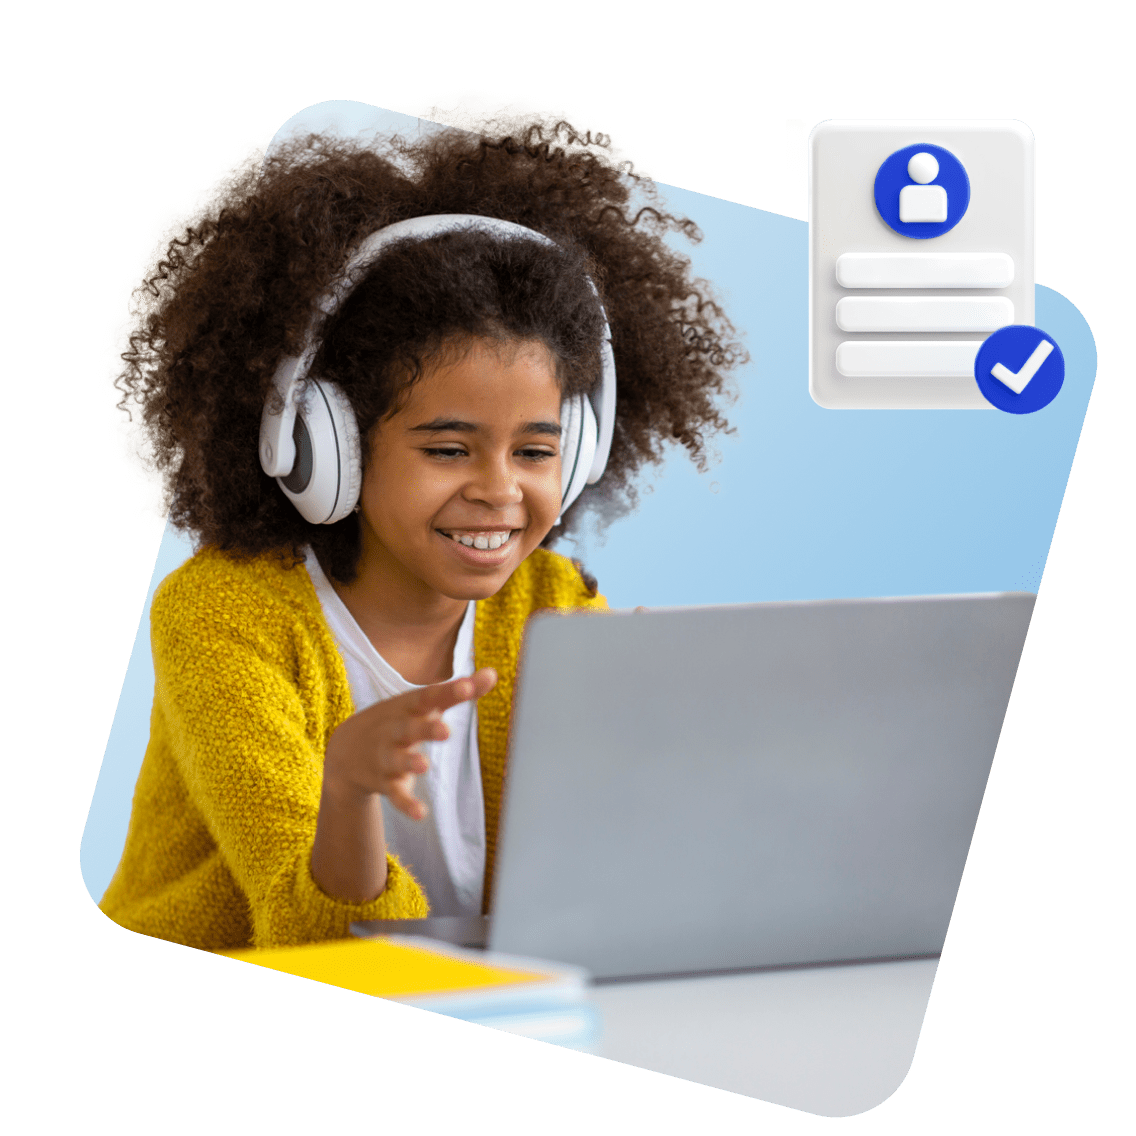 Arizona Online Schools image 1 (name 3 Young Girl Laptop Headphones Certificate 1 1)